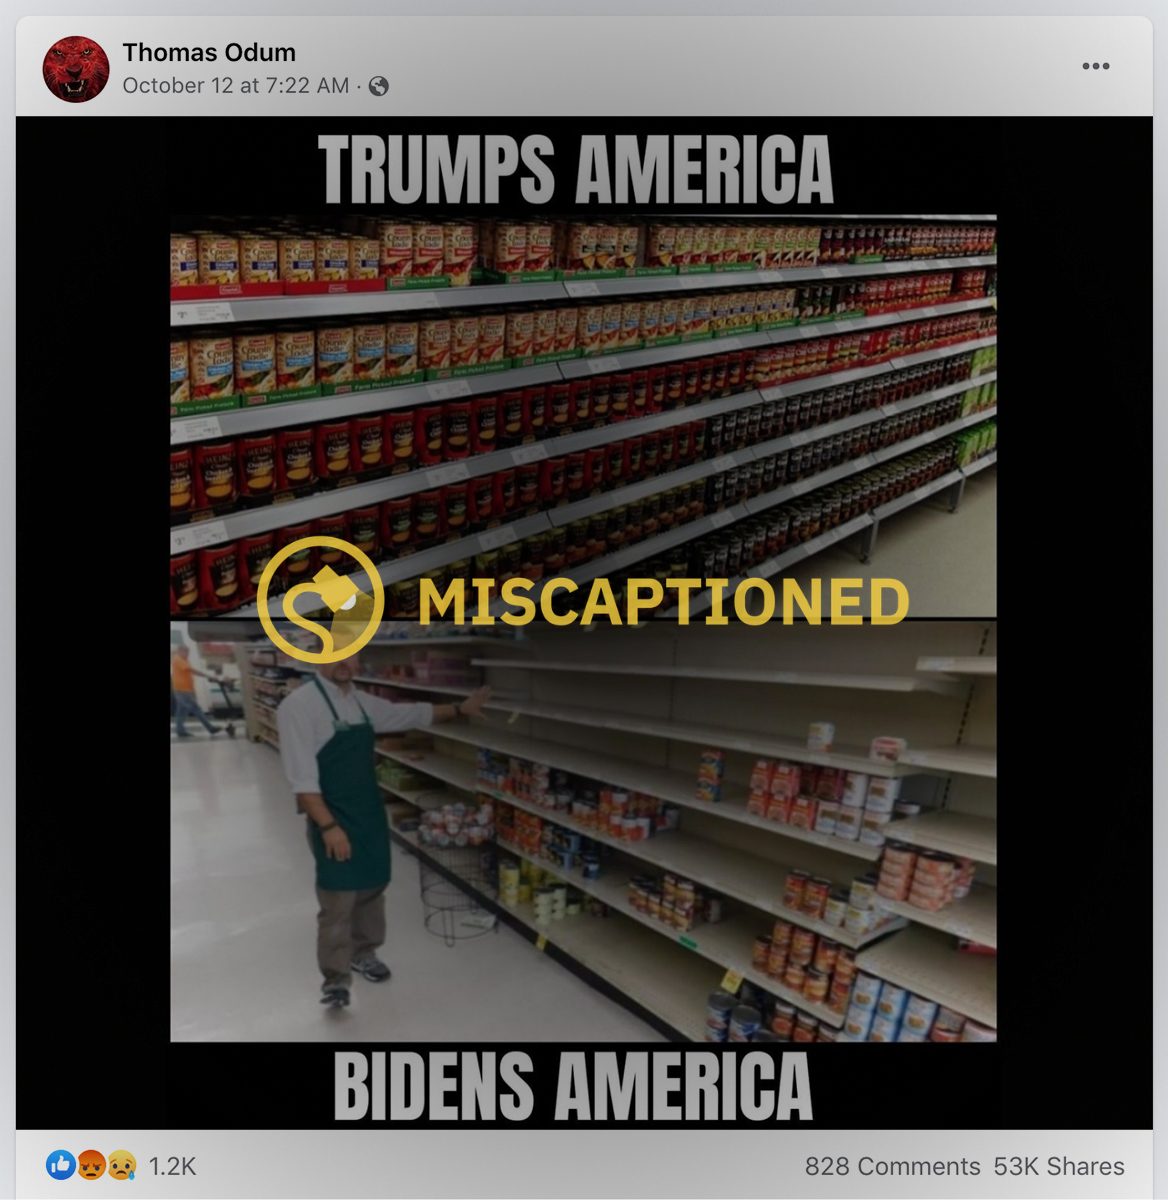 Un meme de Facebook reclamó y mencionó el Estados Unidos de Trump y el Estados Unidos de Biden y mostró estantes vacíos y llenos en una tienda de comestibles.